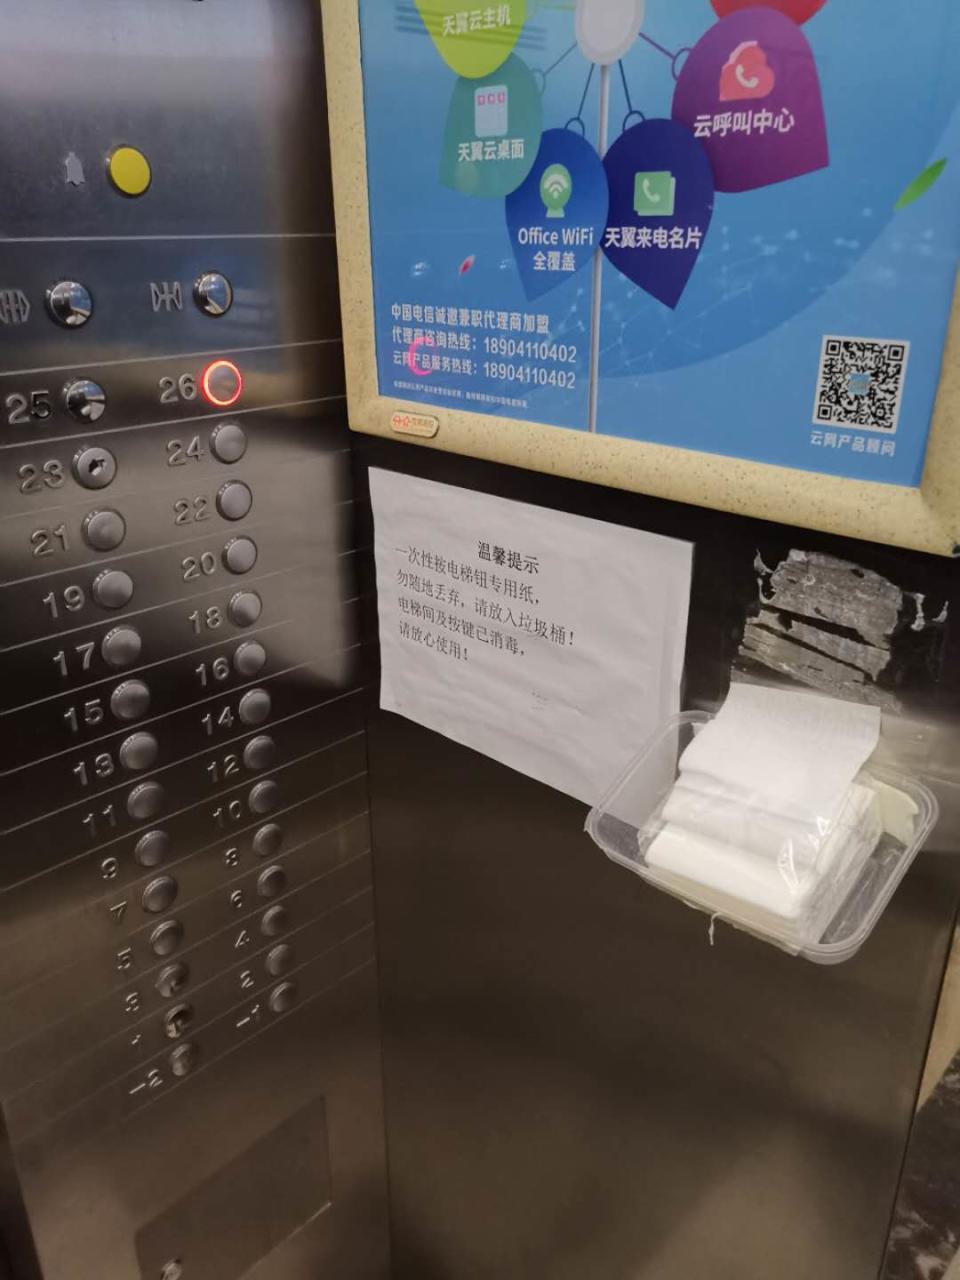 Des mouchoirs sont à disposition dans les ascenseurs pour appuyer sur les boutons d'étage